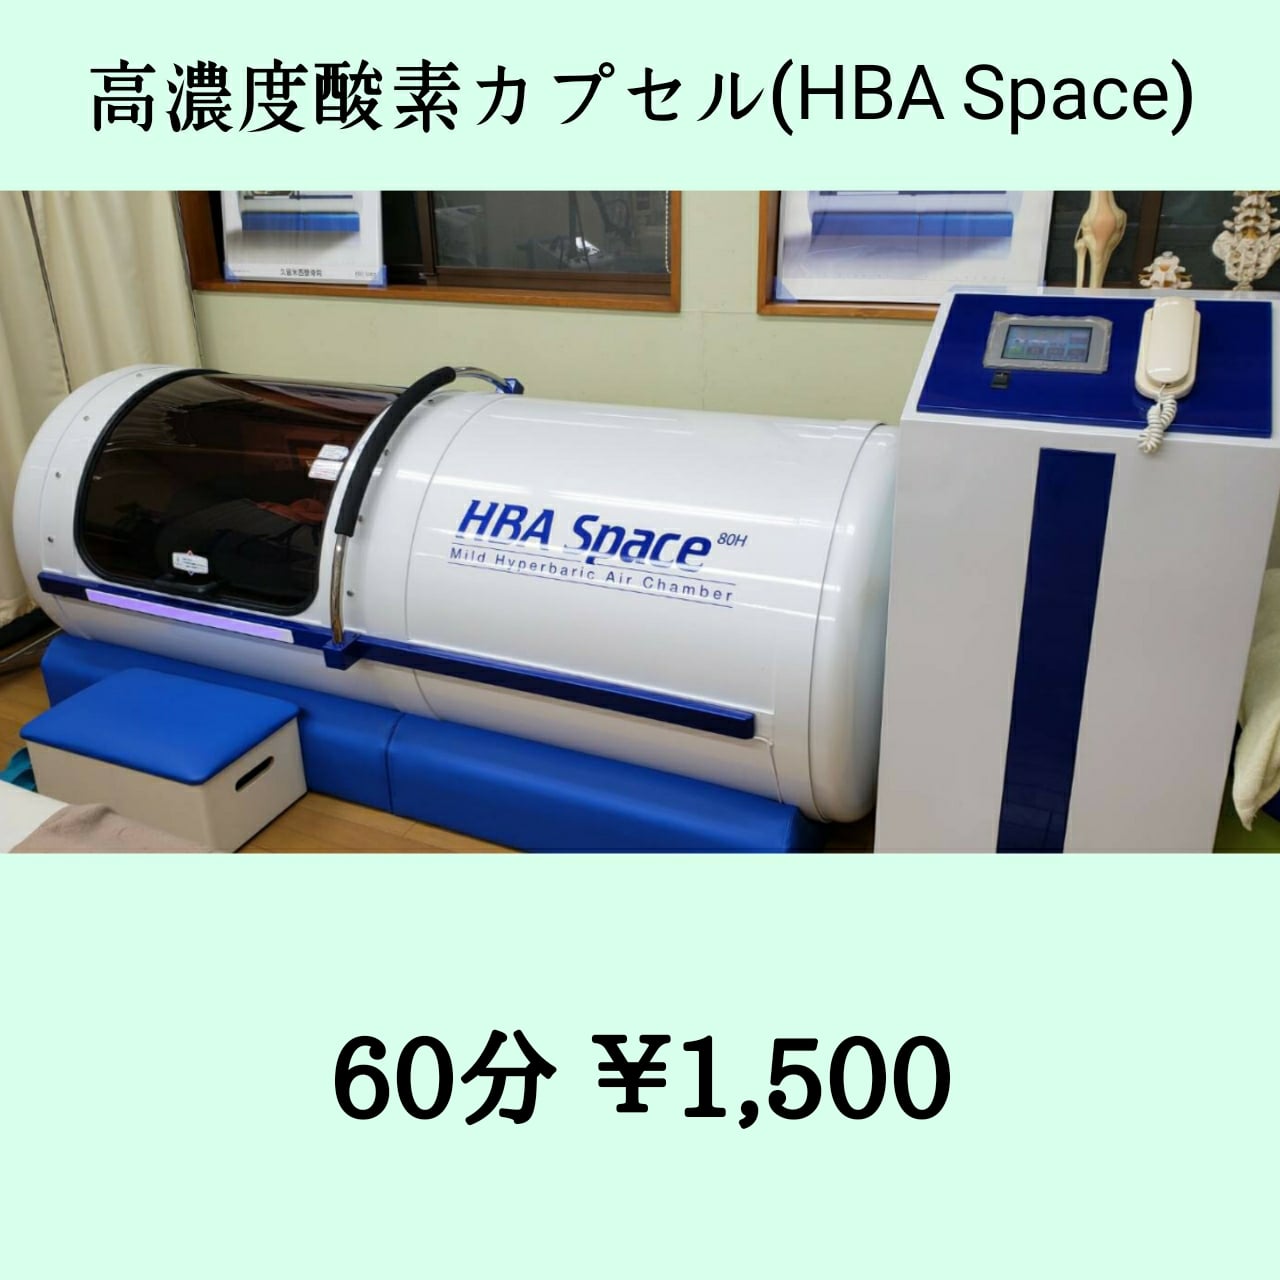 高濃度酸素カプセル(HBA Space)60分1回/1,500円チケット